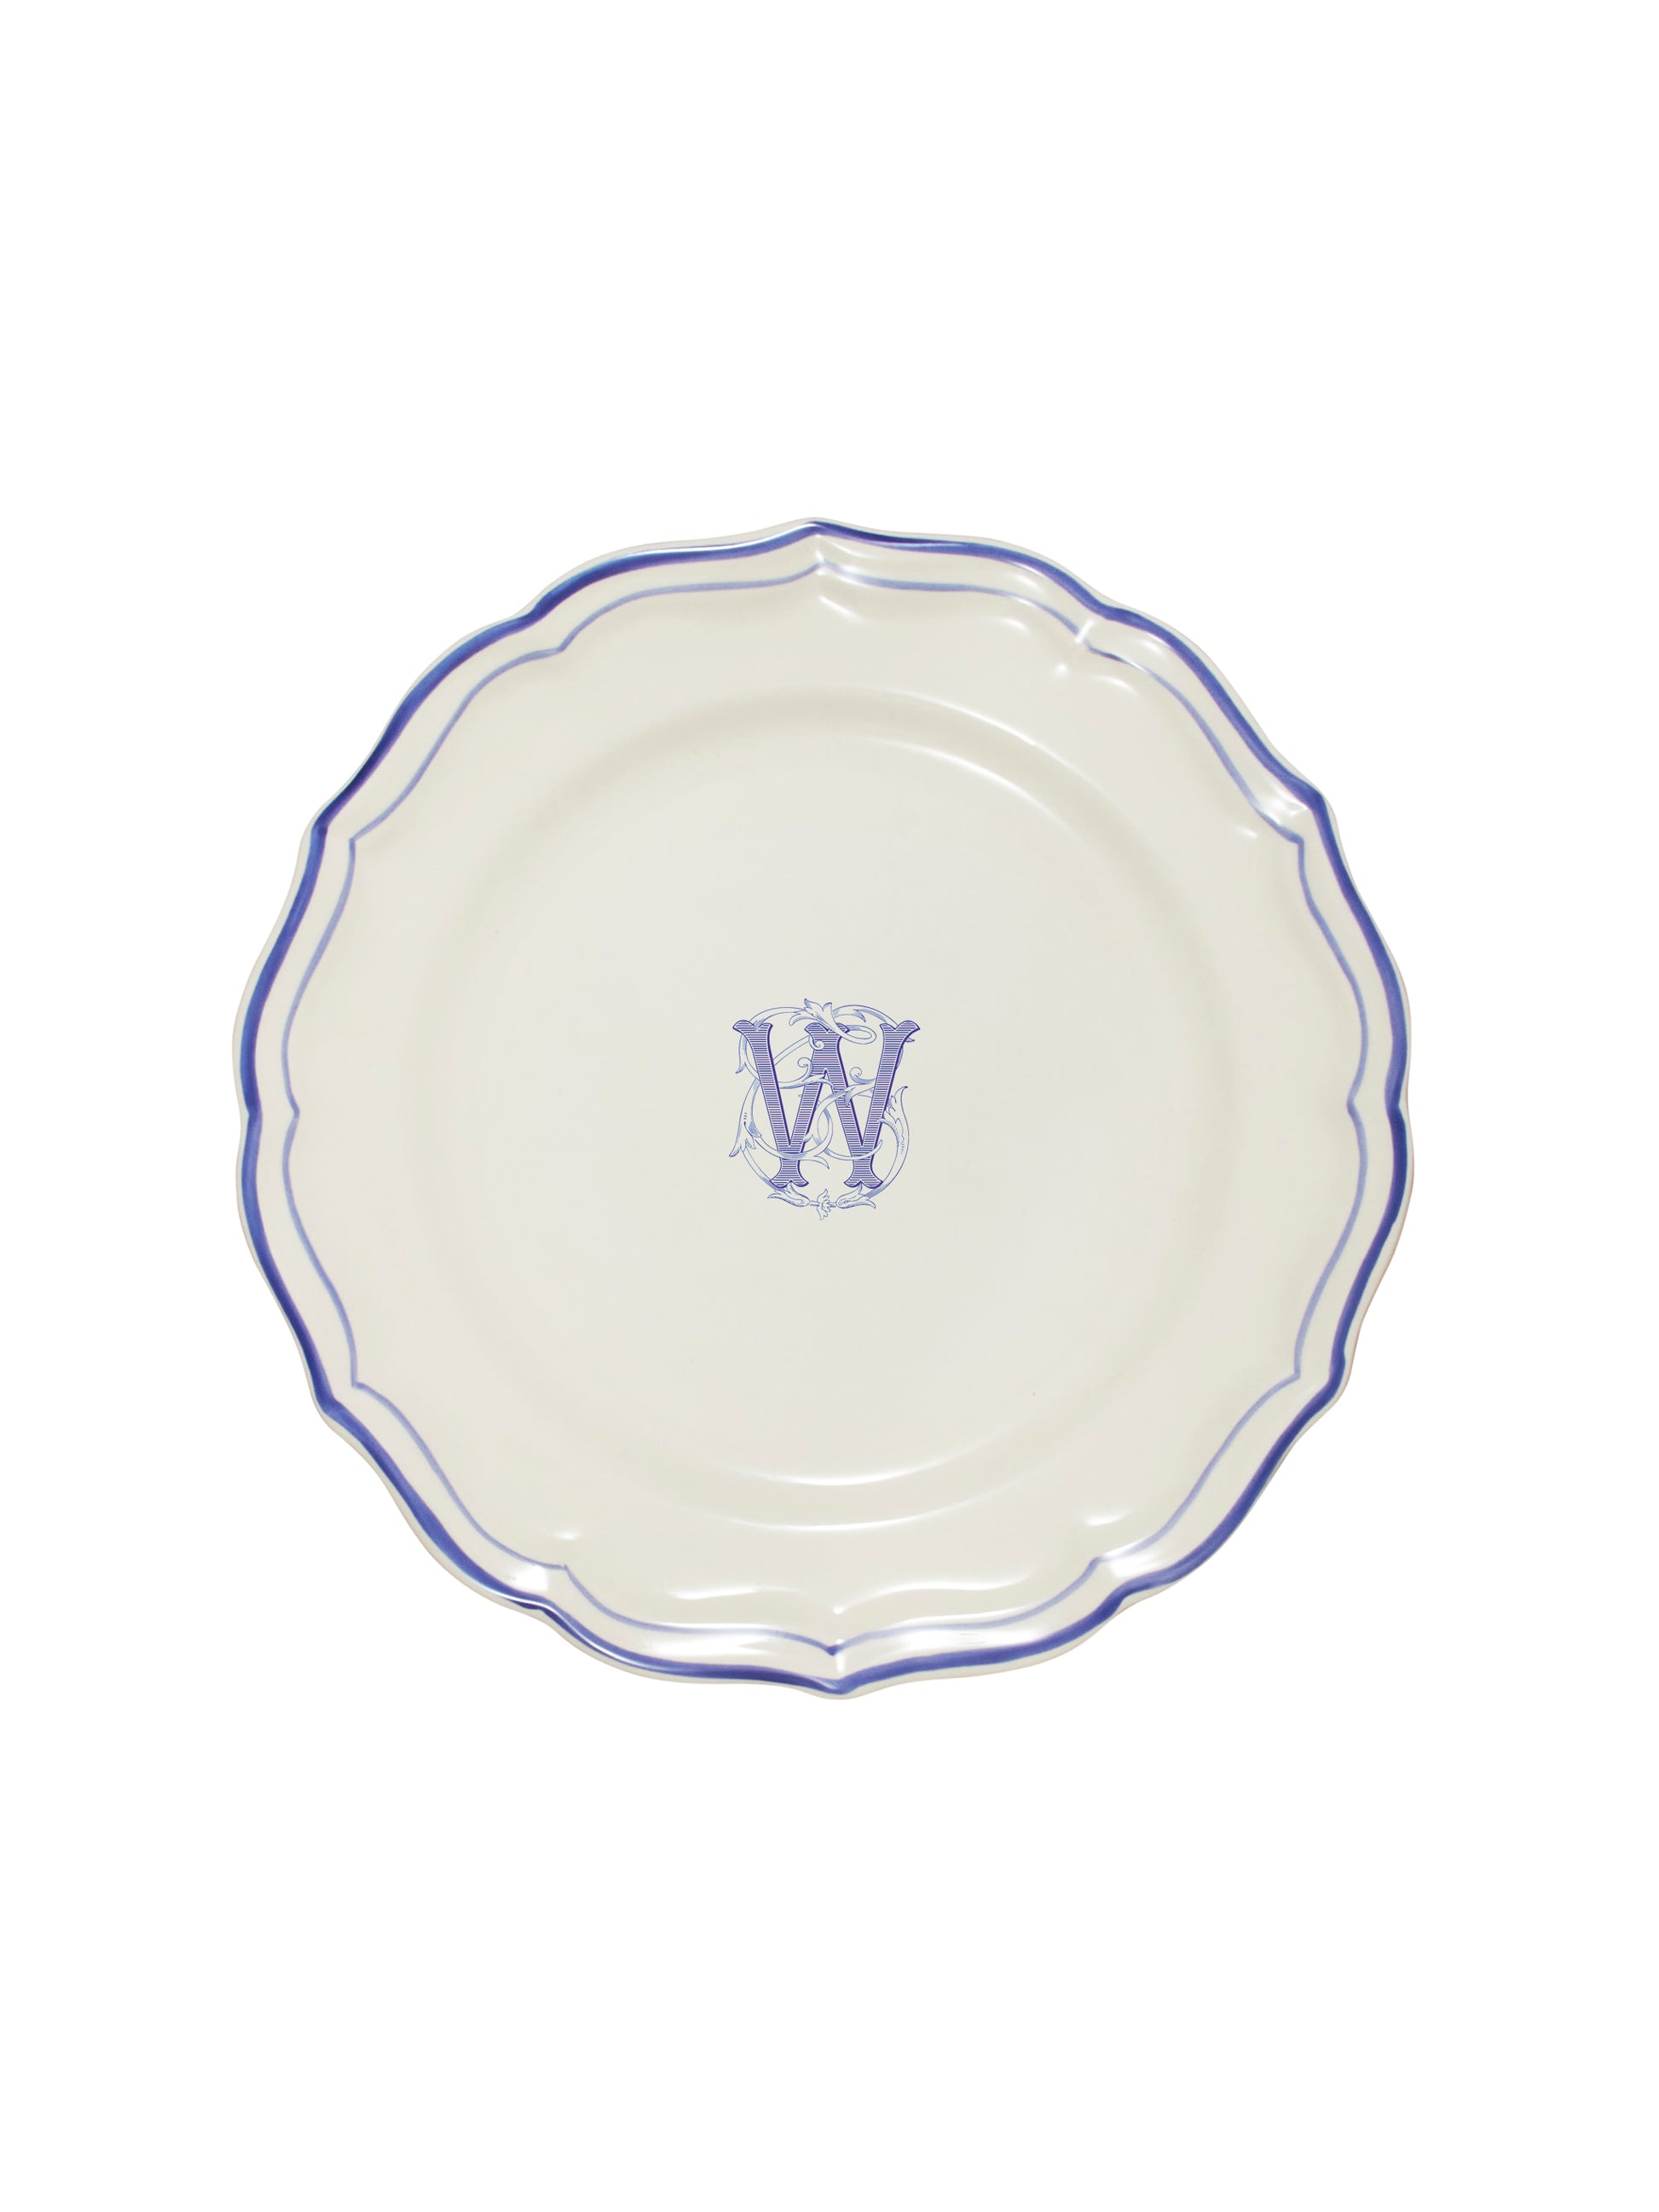 Gien Filet Bleu Dinner Plate W Weston Table